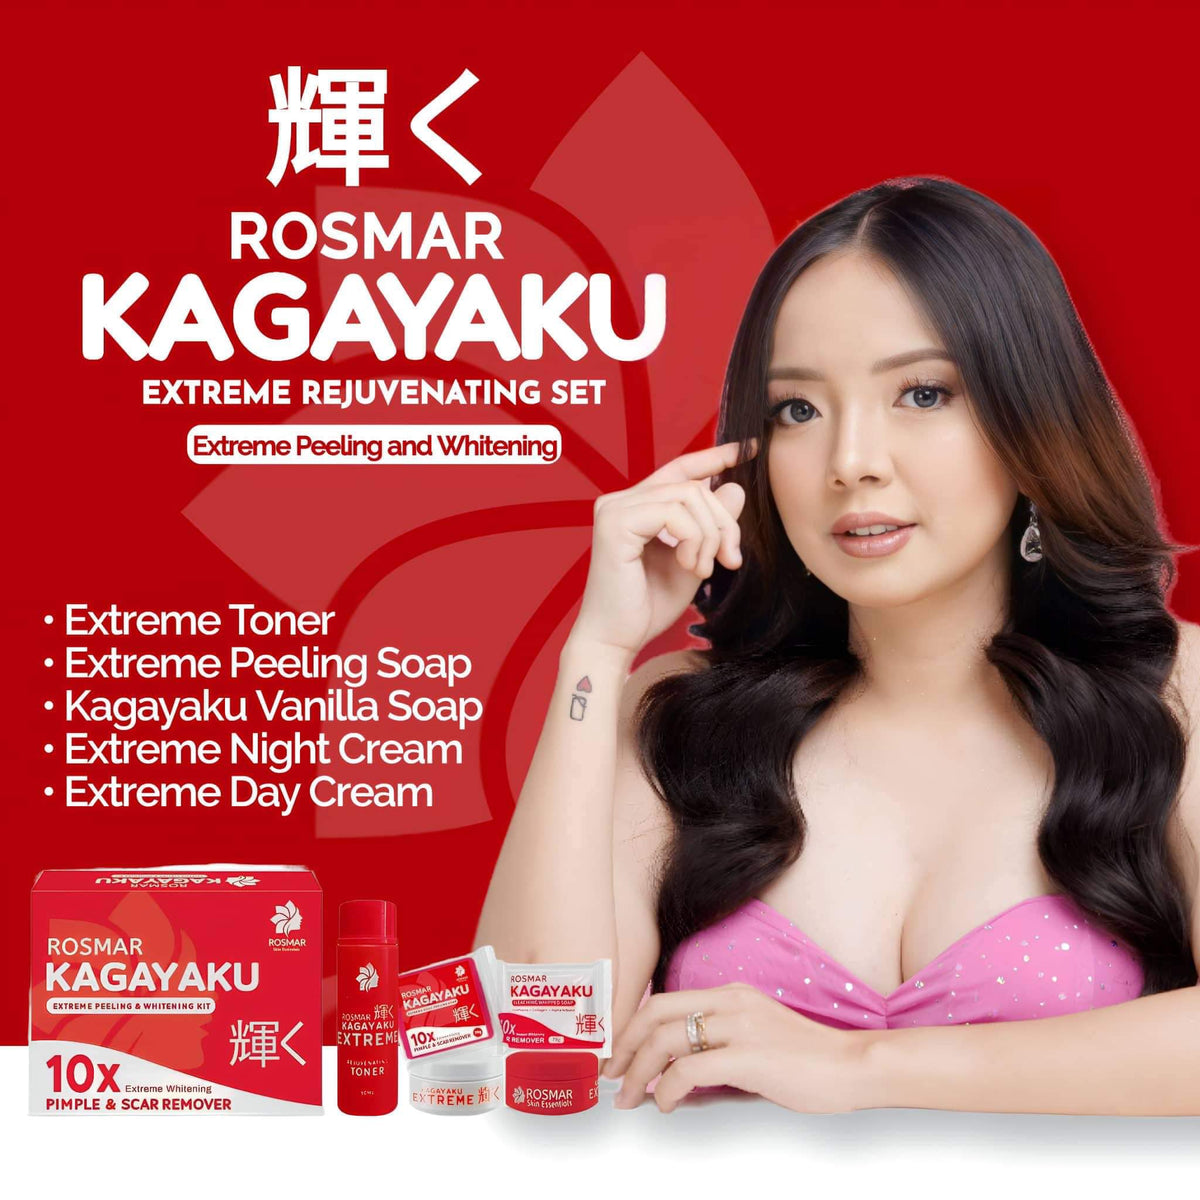 Hot Product! Rosmar Kagayaku Rejuv Set